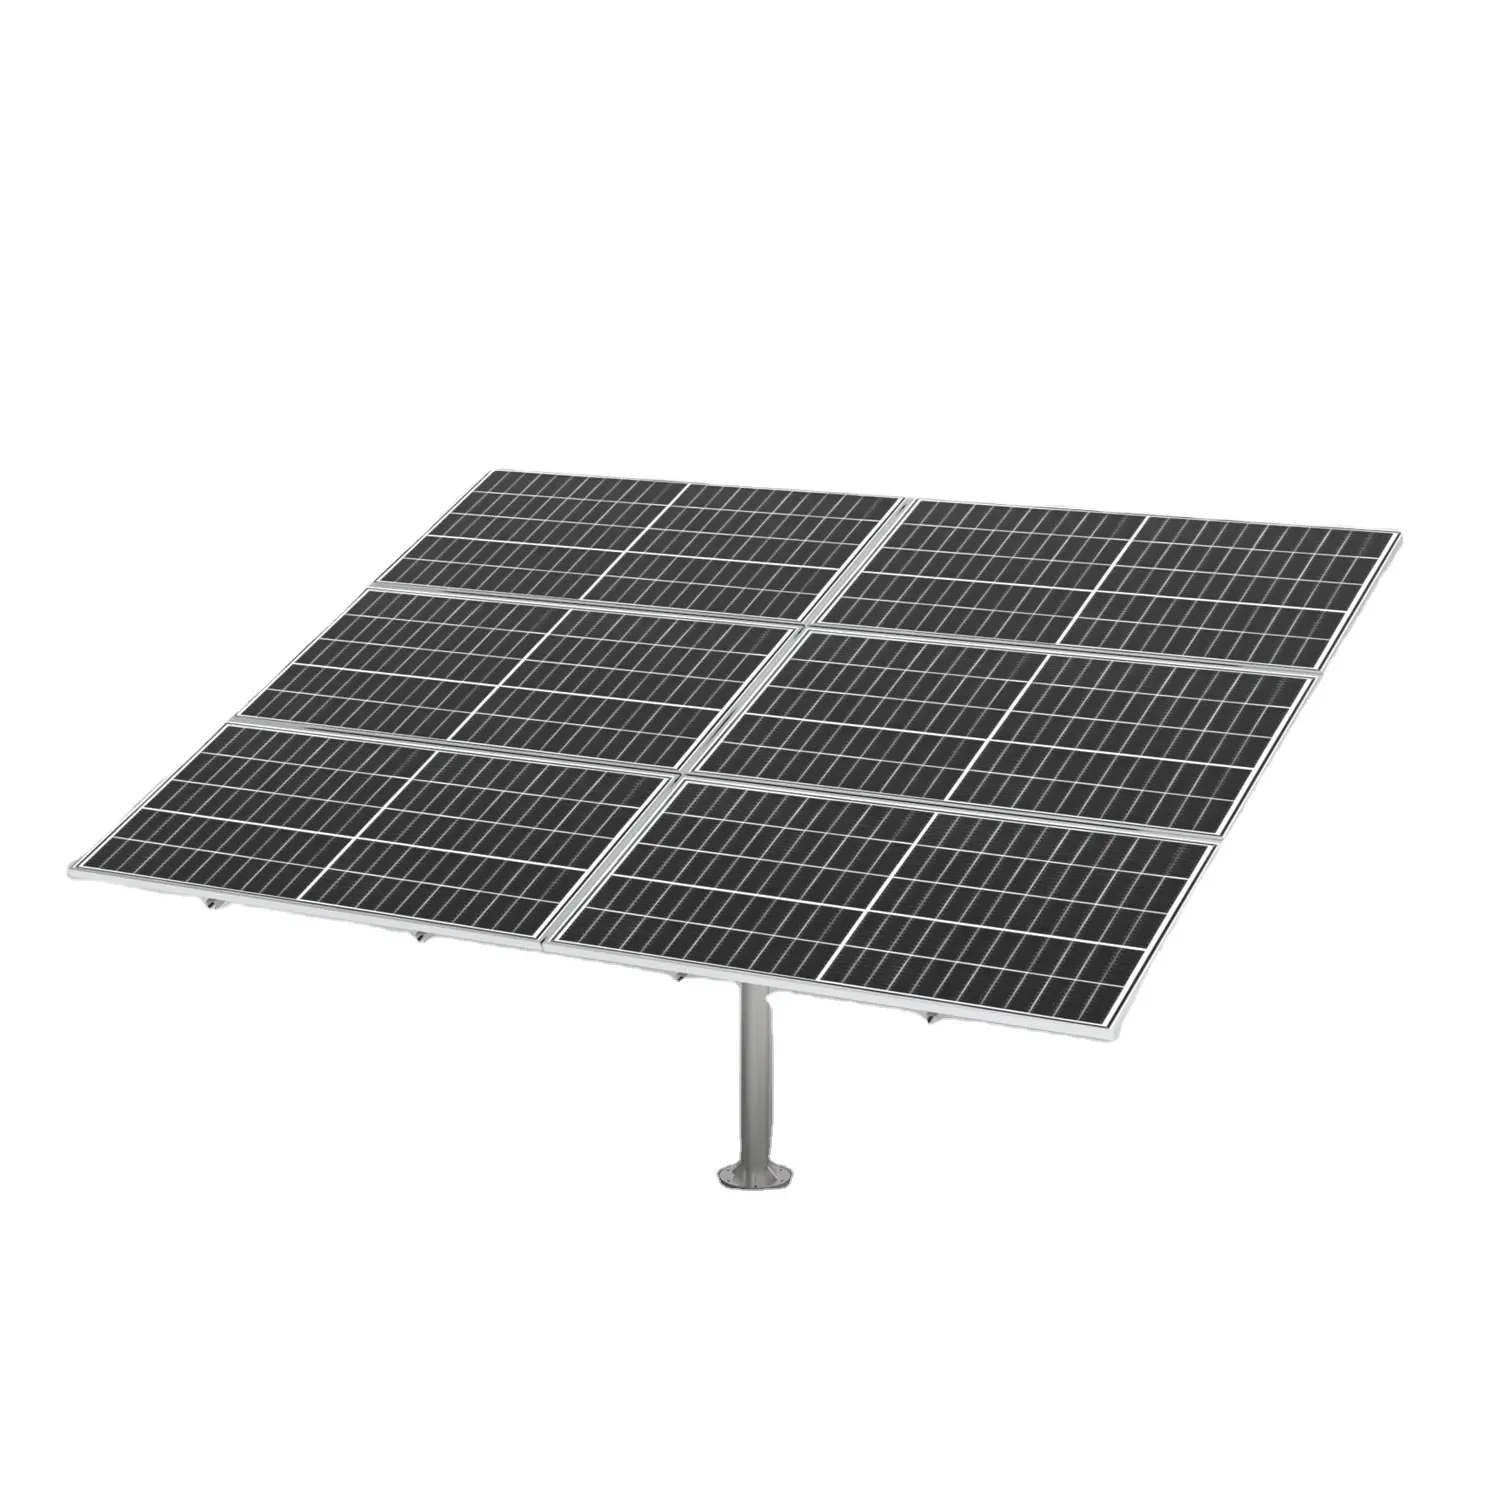 Système de suivi solaire PV 2 axes 1kW mini tracker